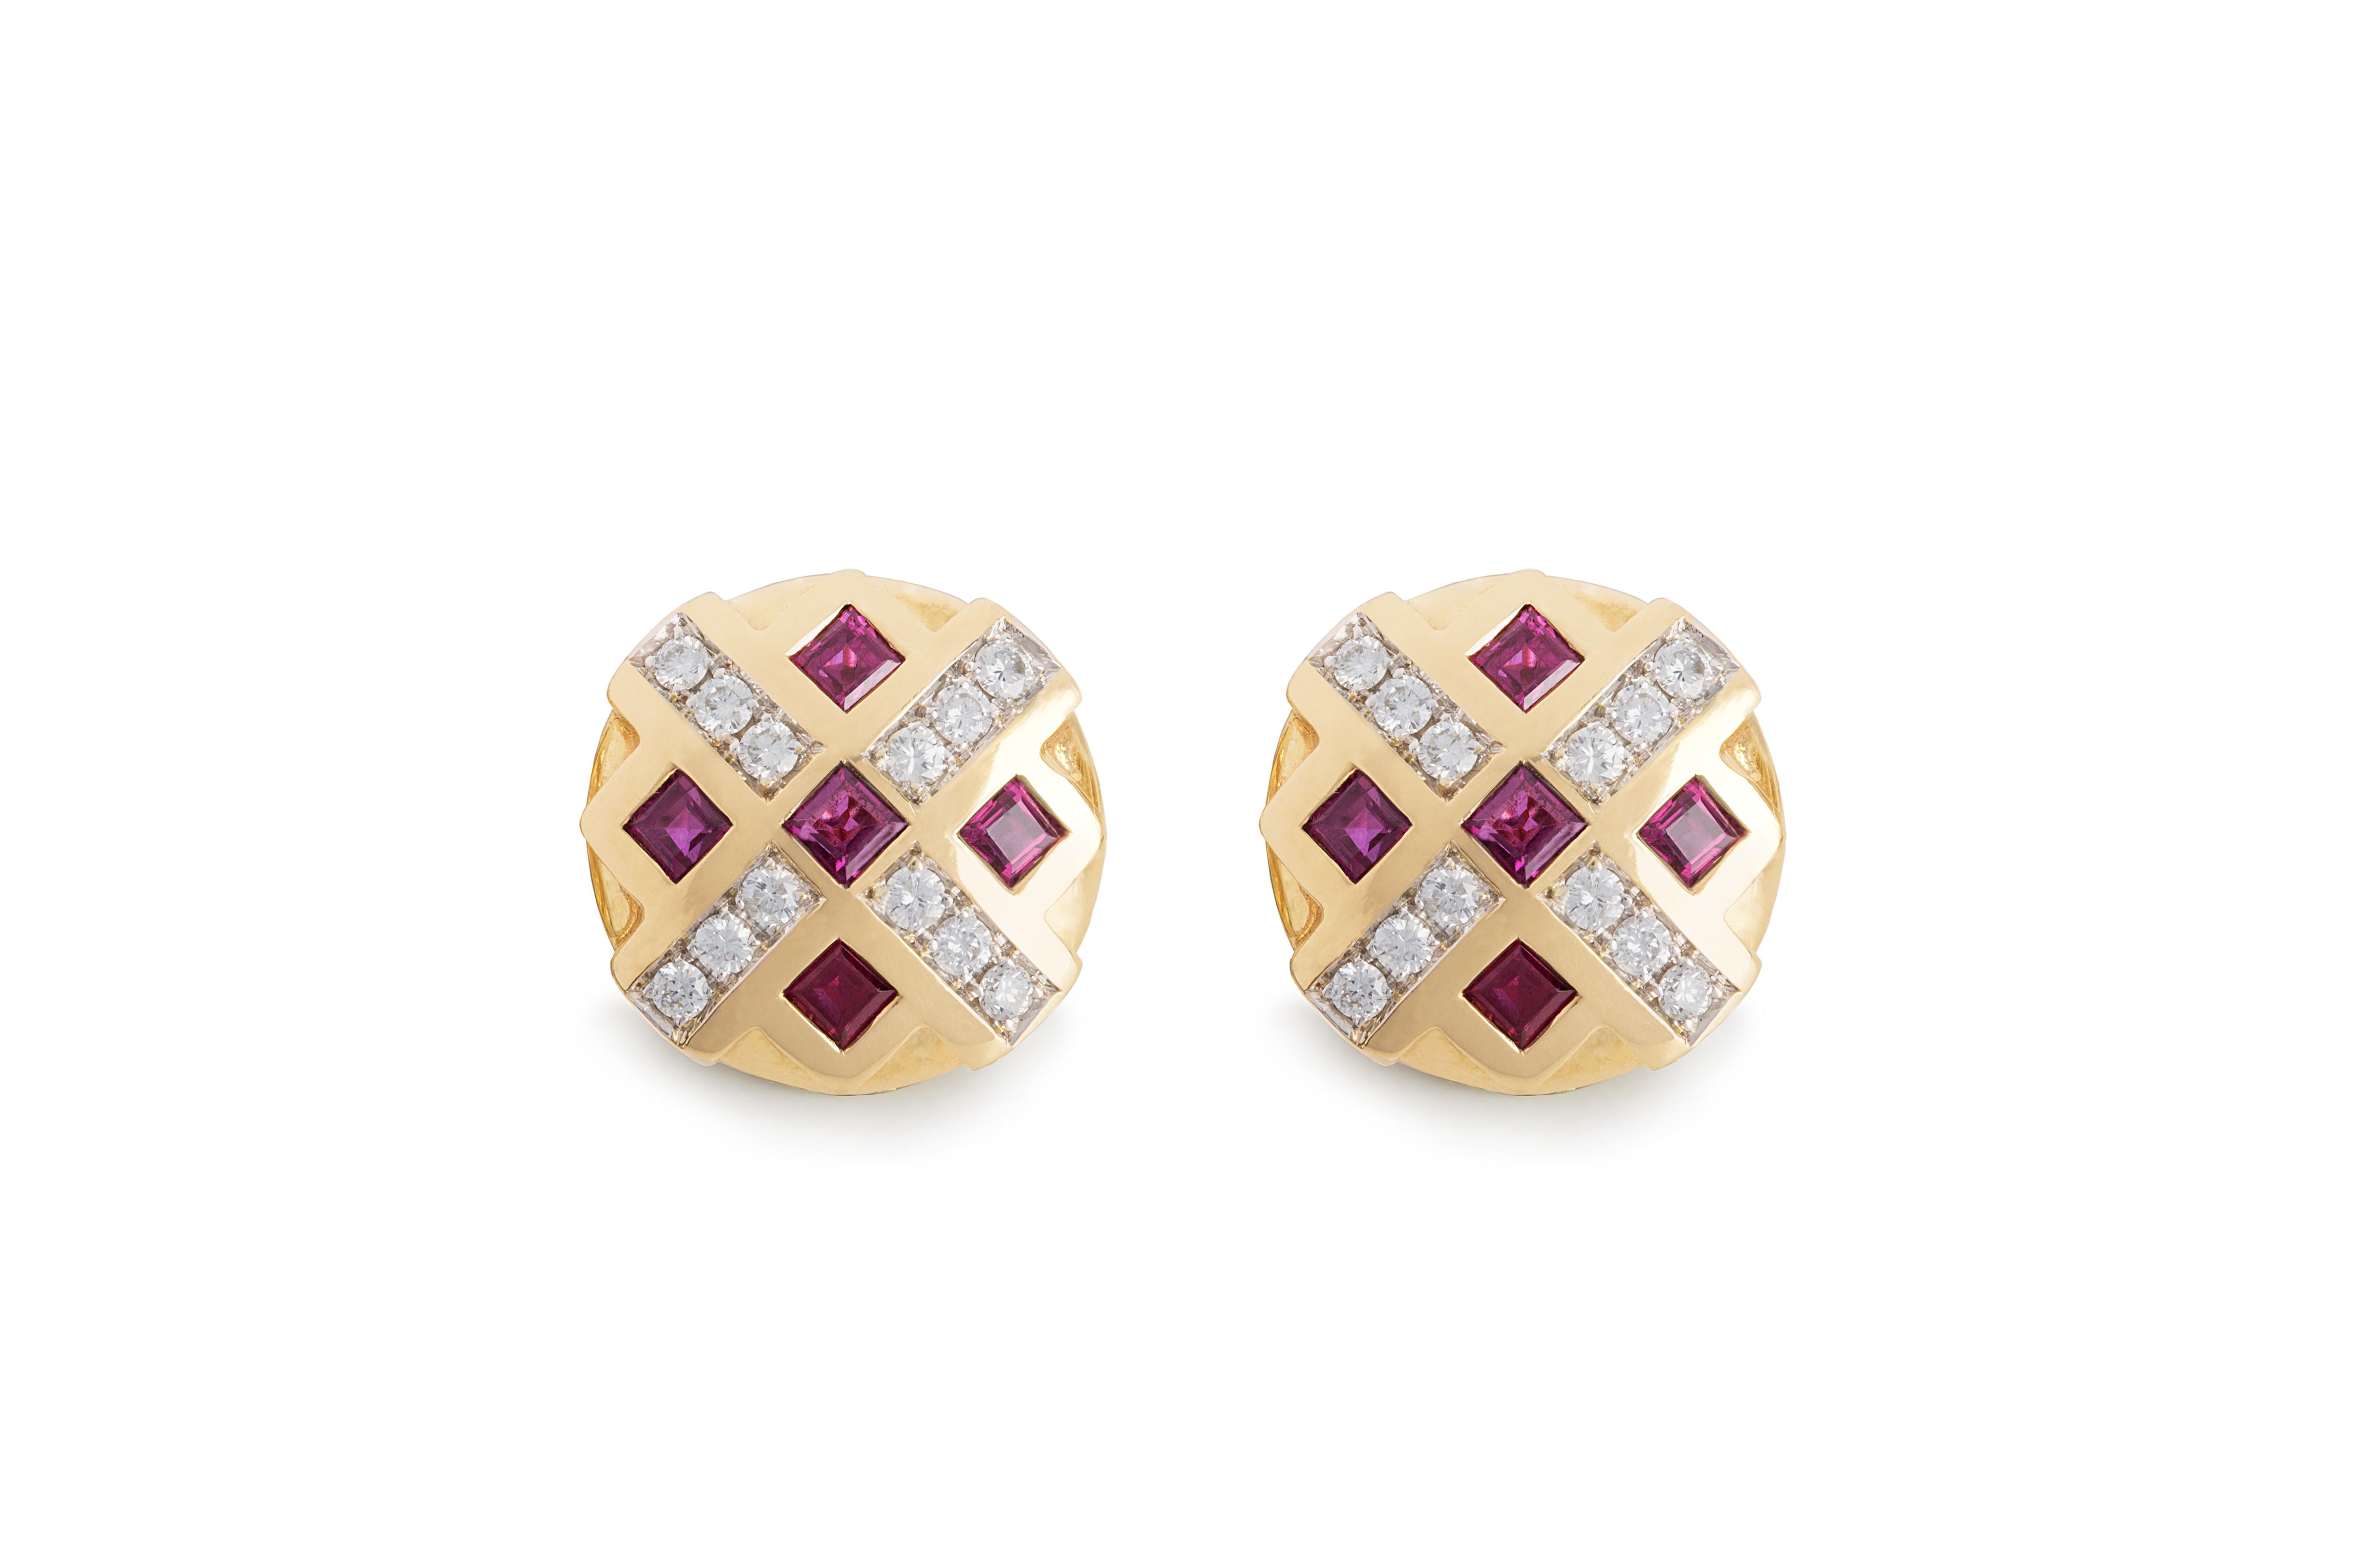 Tauchen Sie ein in die strategische Faszination des Schachspiels mit den handgefertigten Ohrringen von Rossella Ugolini aus 18 Karat Gelbgold, verziert mit 0,24 Karat weißen Diamanten (Farbe G, VS1) und einer Option für einen 1-Karat-Rubin, für